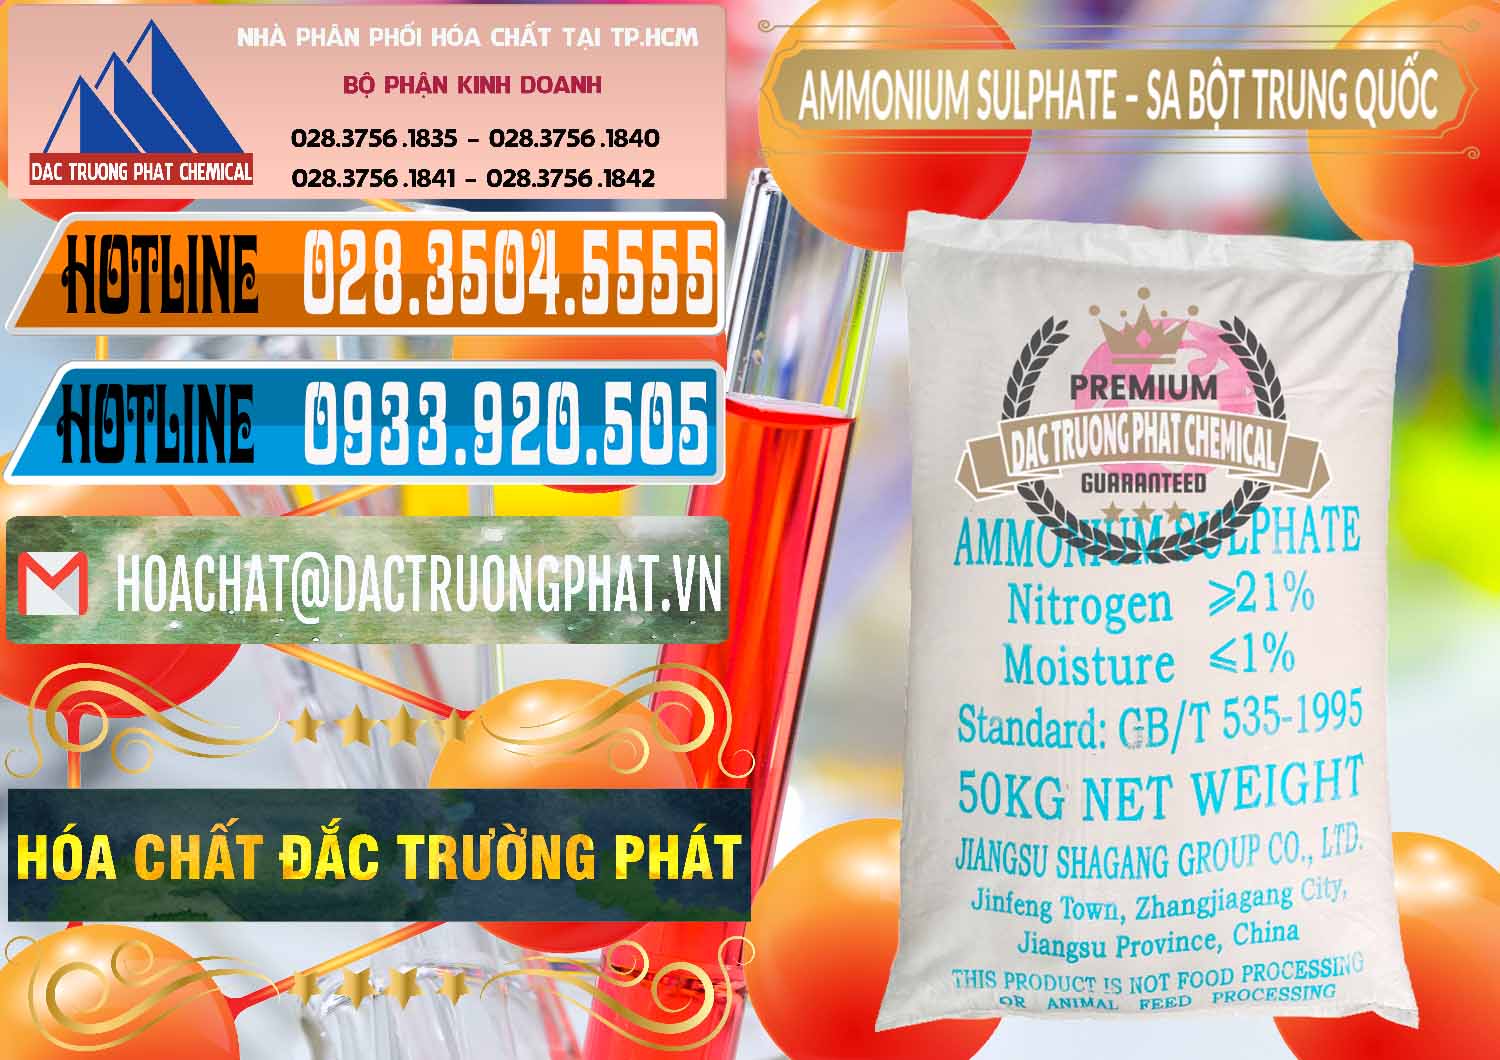 Cty chuyên bán & cung ứng Ammonium Sulphate – Phân Sa Trung Quốc China - 0024 - Công ty kinh doanh & cung cấp hóa chất tại TP.HCM - stmp.net